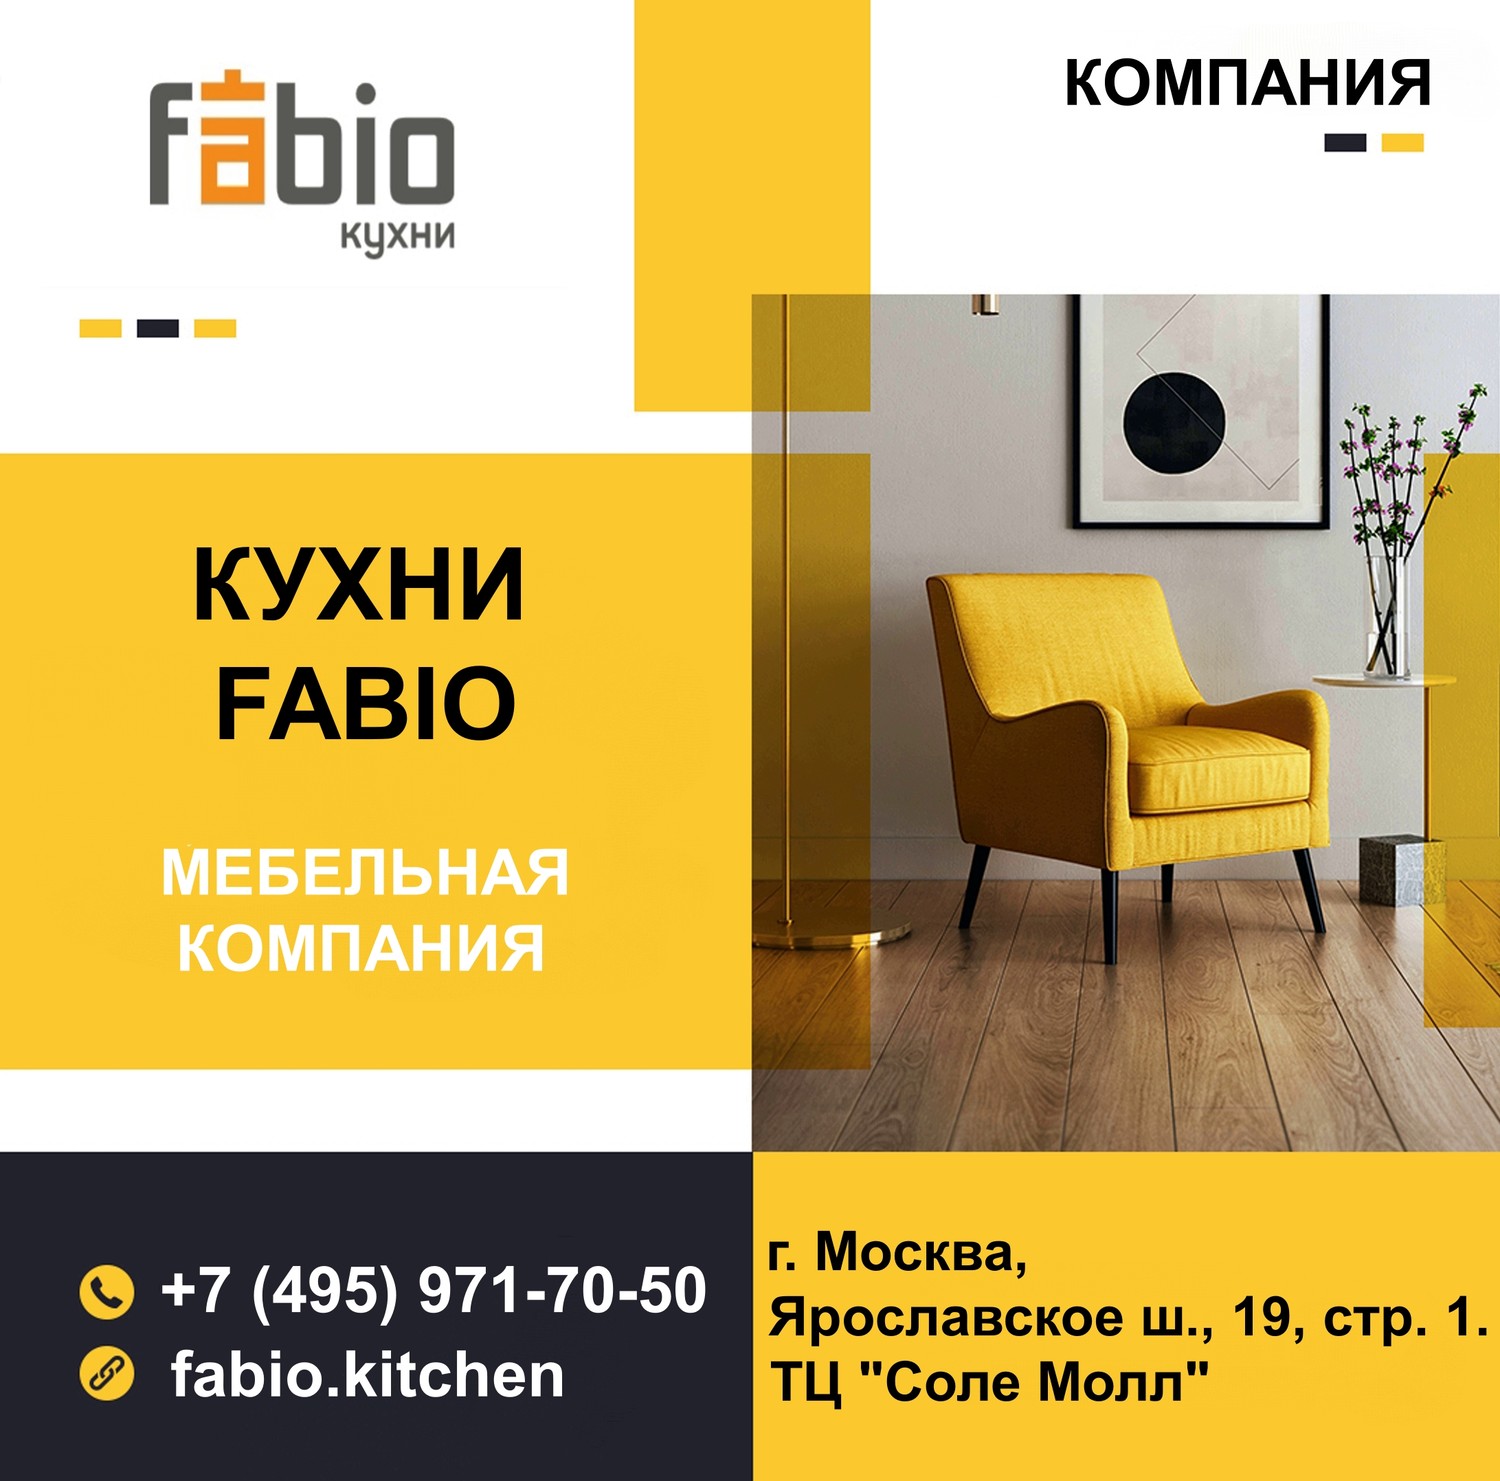 Fabio Kitchen